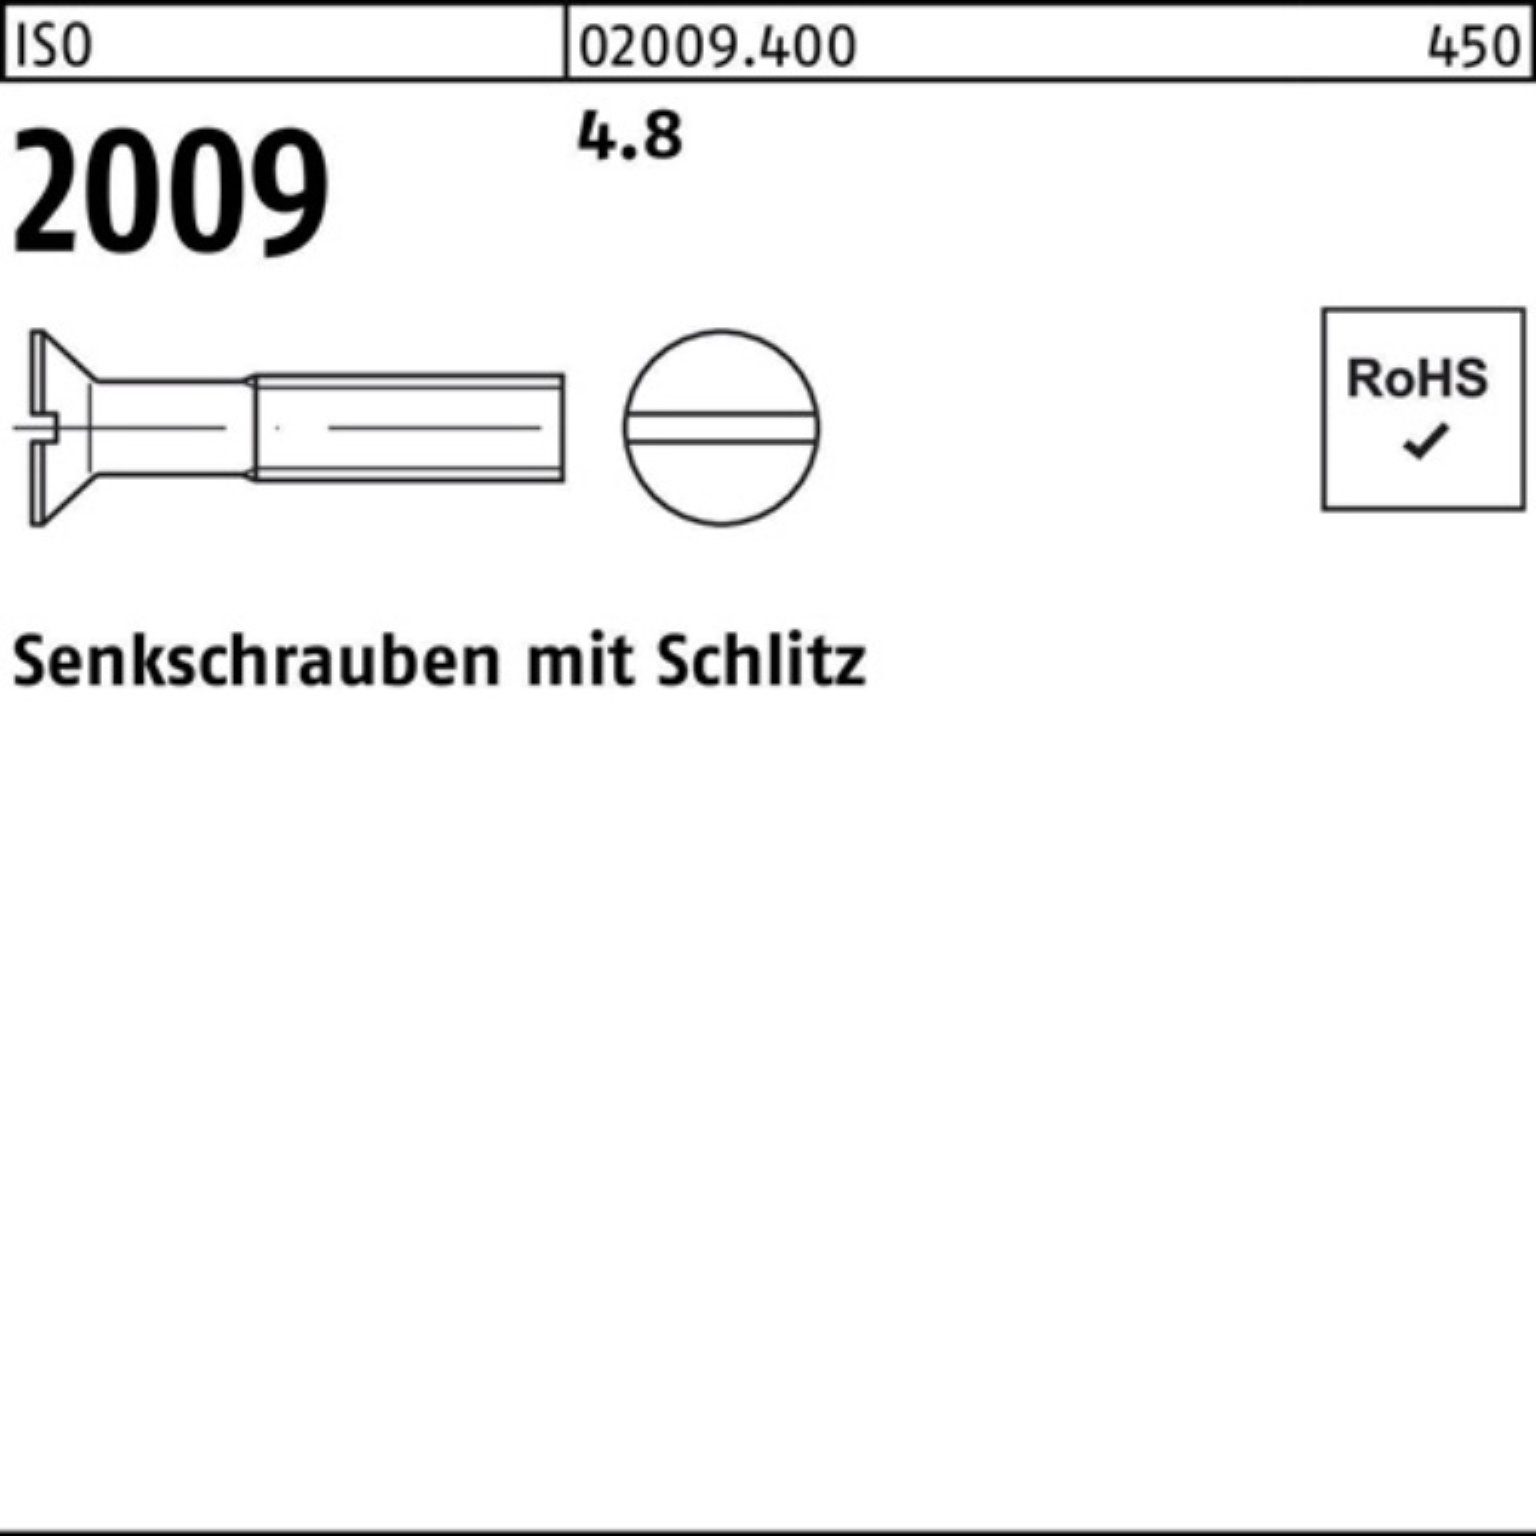 Einführung in beliebte Artikel Reyher Senkschraube 2 2009 1000 4.8 Stück ISO 1000er 20 ISO Senkschraube Pack Schlitz M6x